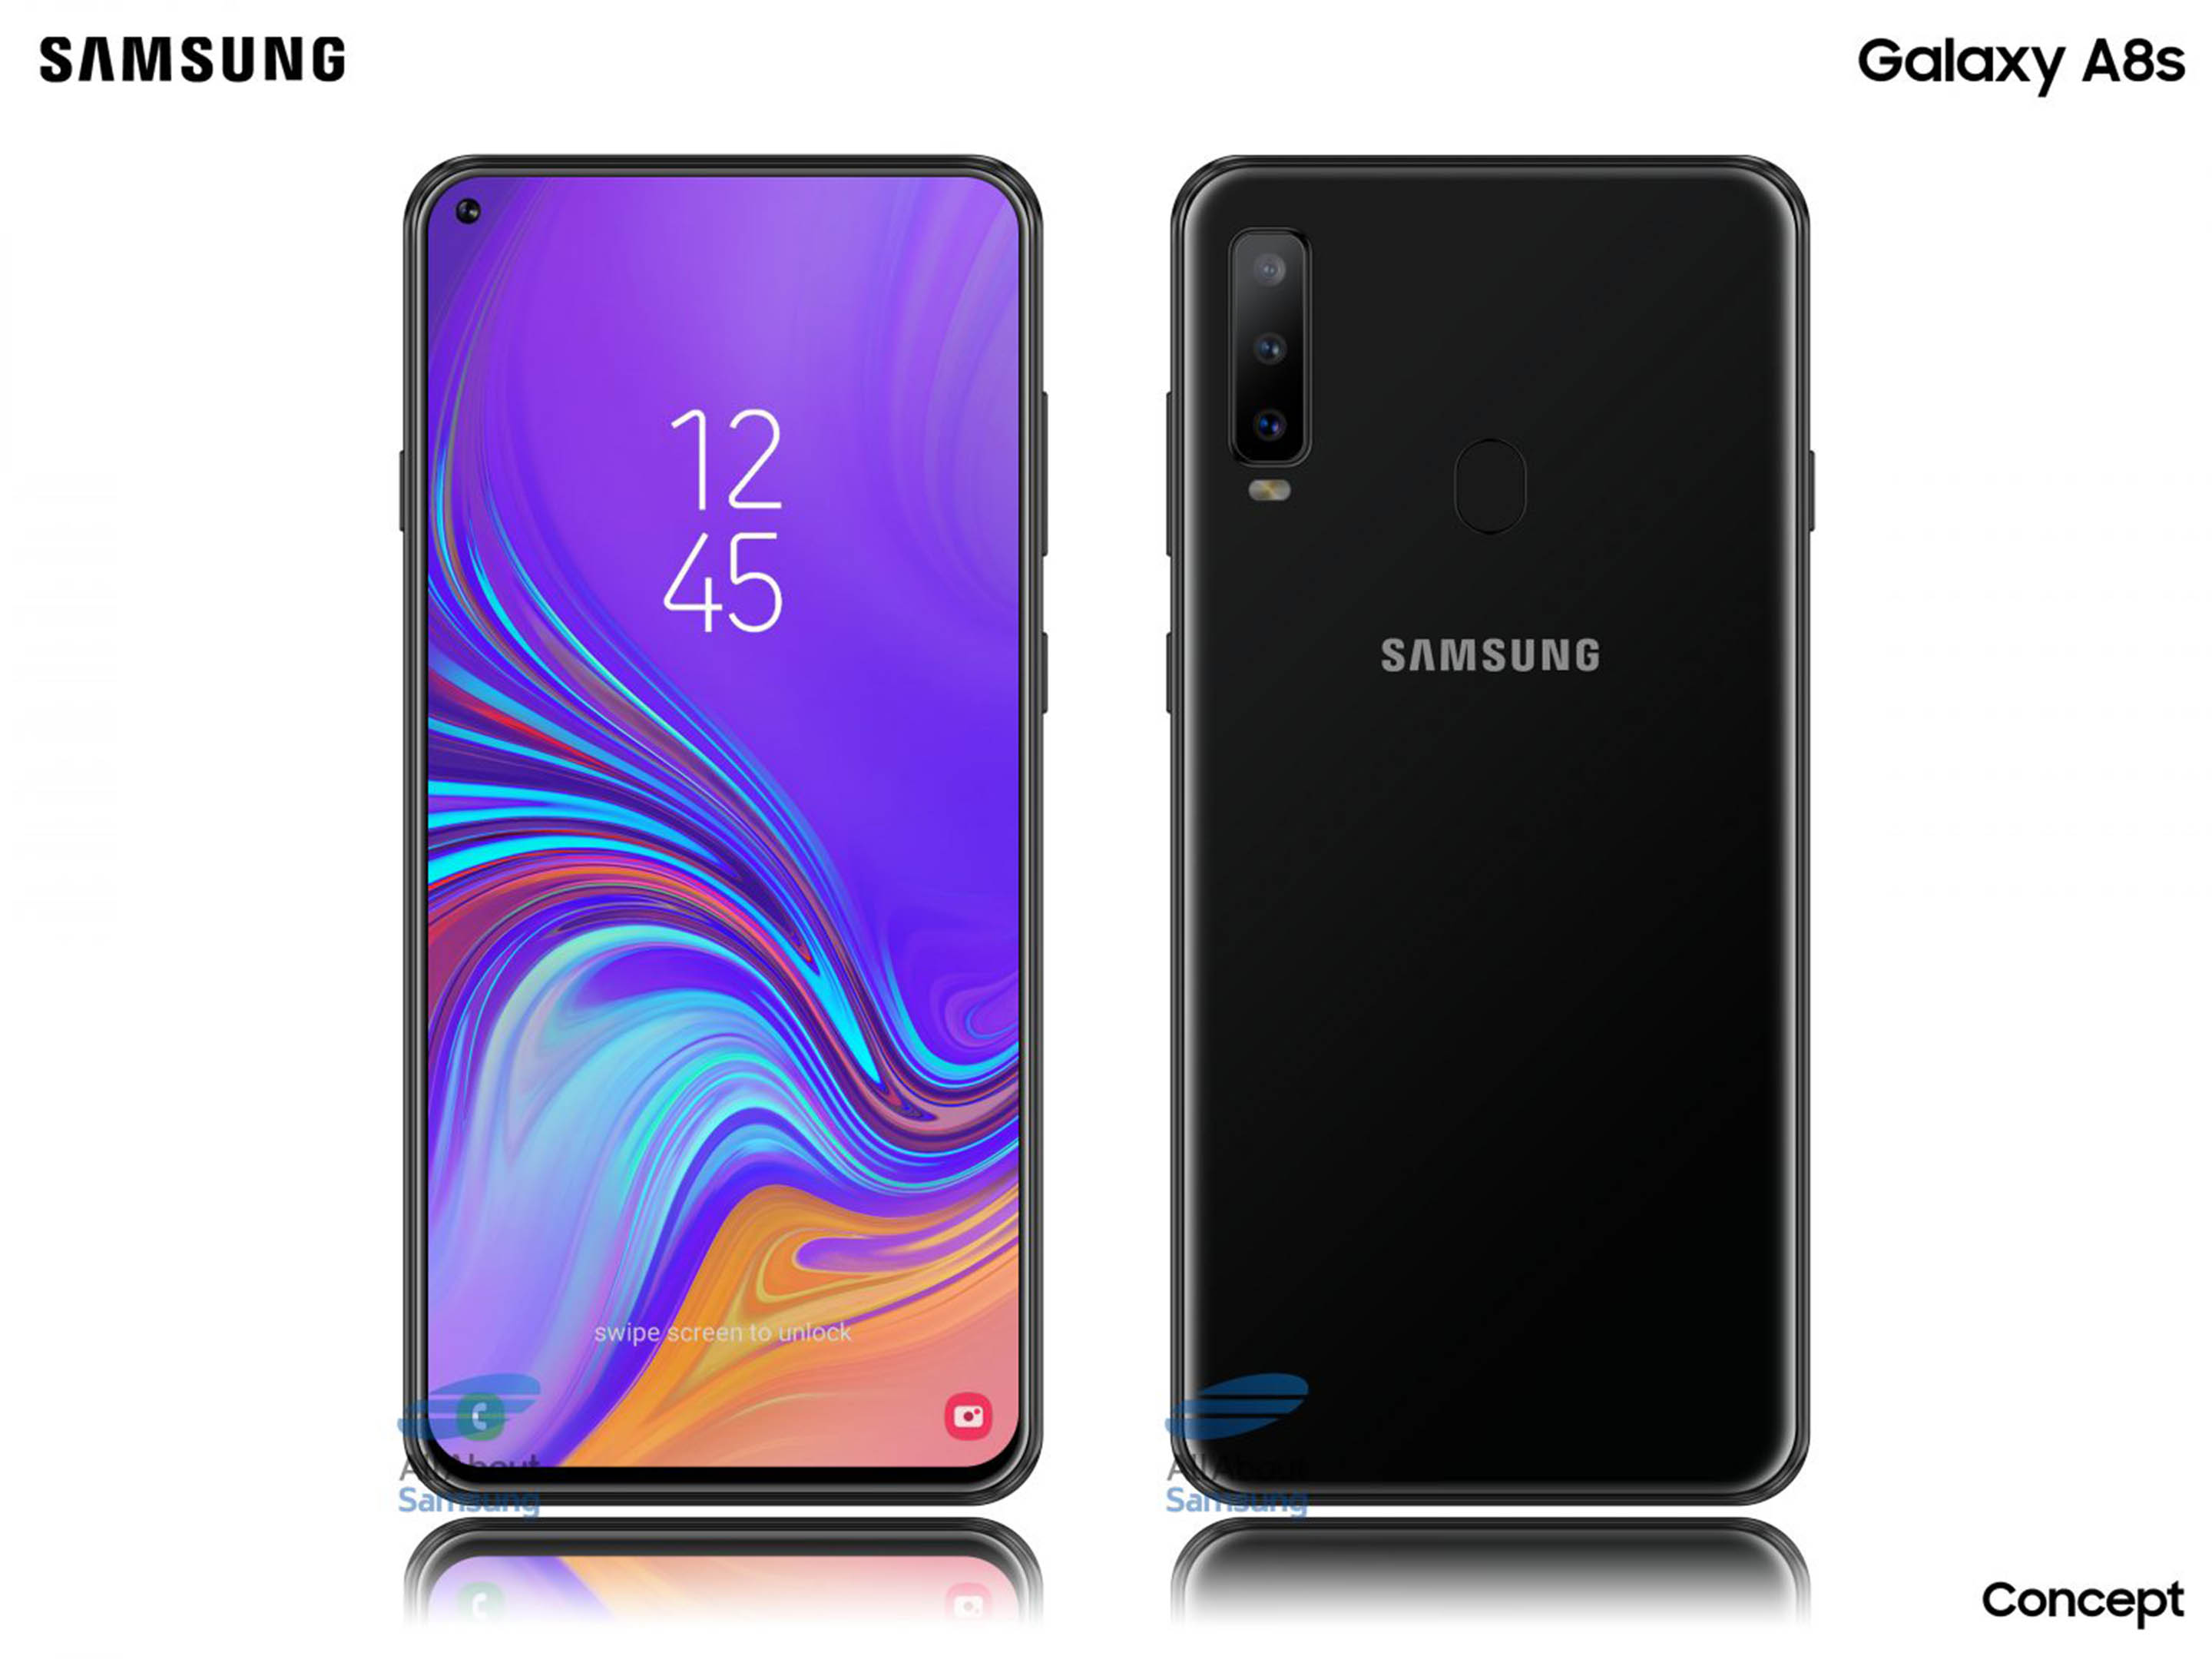 Samsung Galaxy A8s render